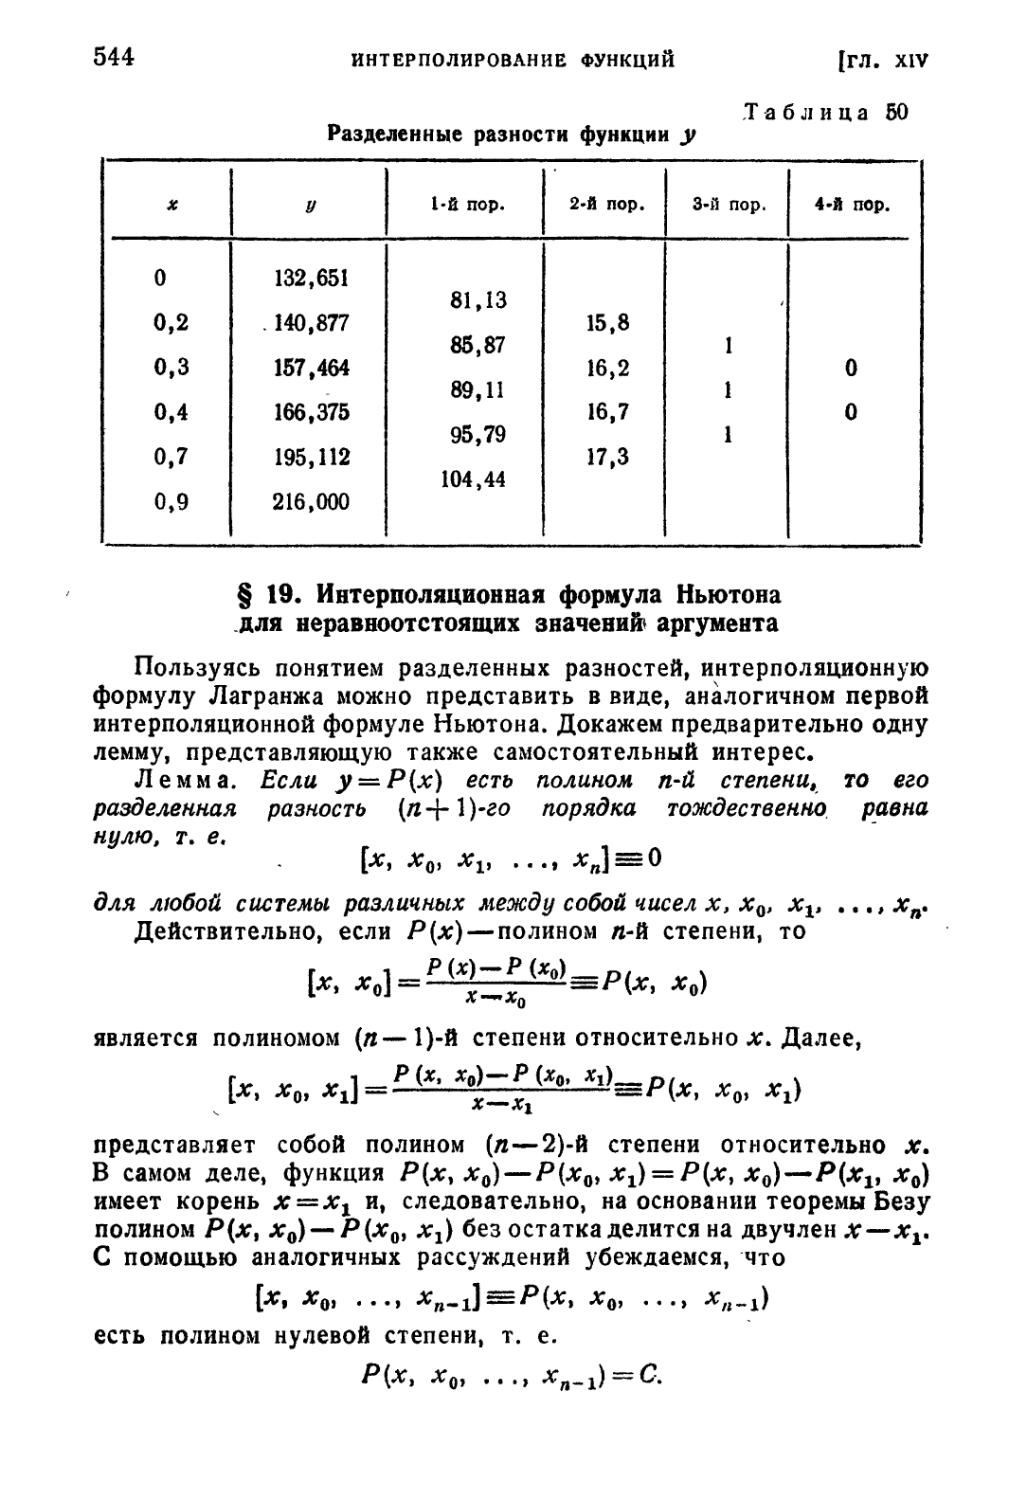 § 19. Интерполяционная формула Ньютона для неравноотстоящих значений аргумента